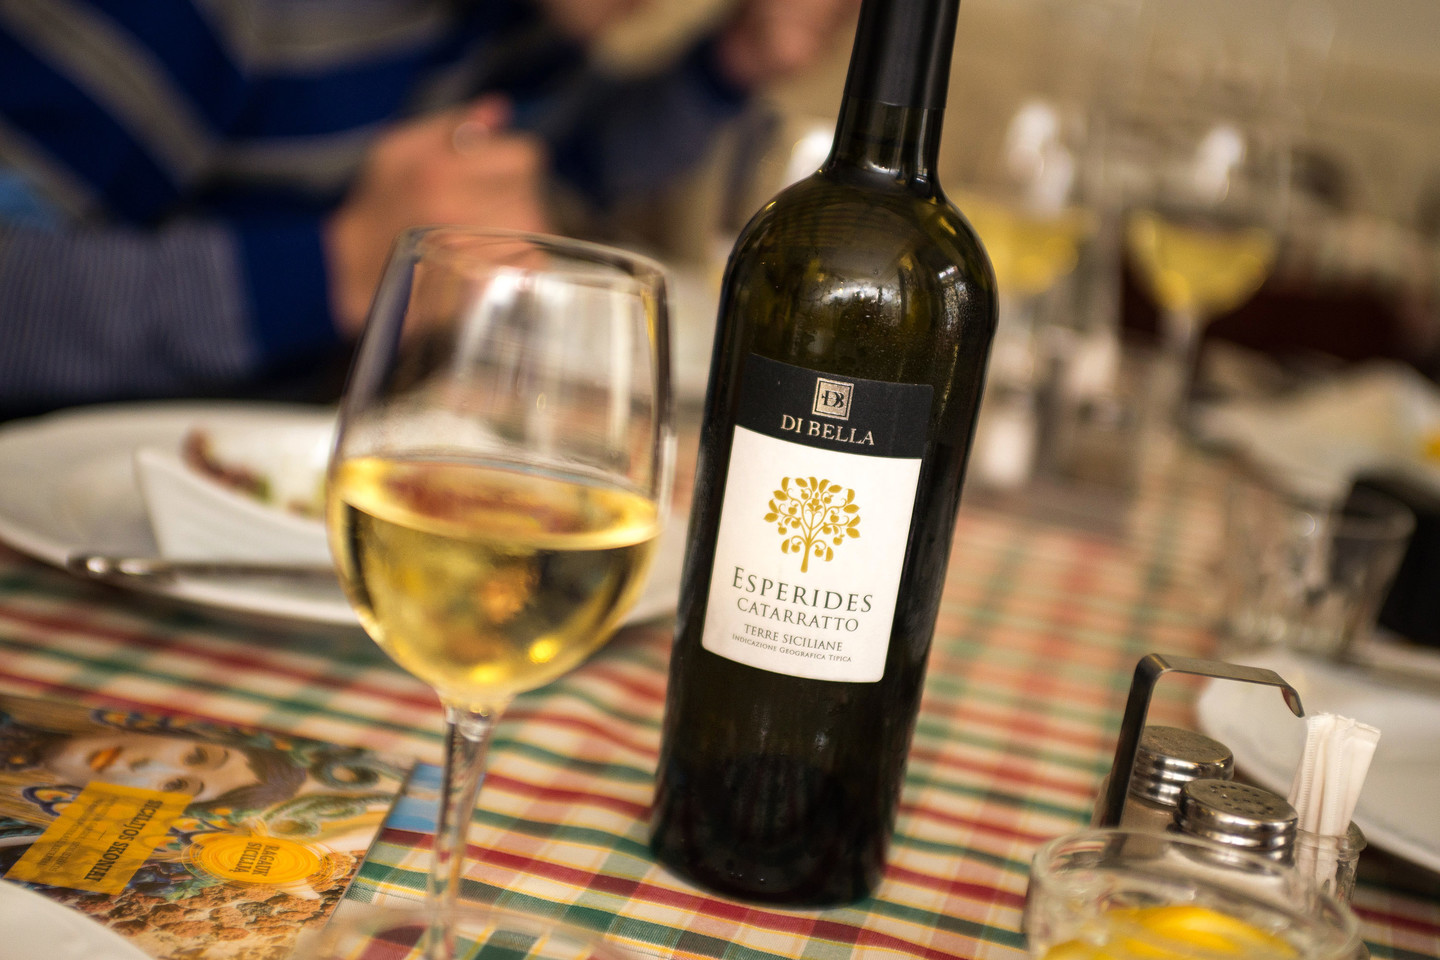  Prie aštuonkojo priderintas sicilietiškas vynas iš 'Catarratto' vynuogių.<br> L.Ruškio nuotr.